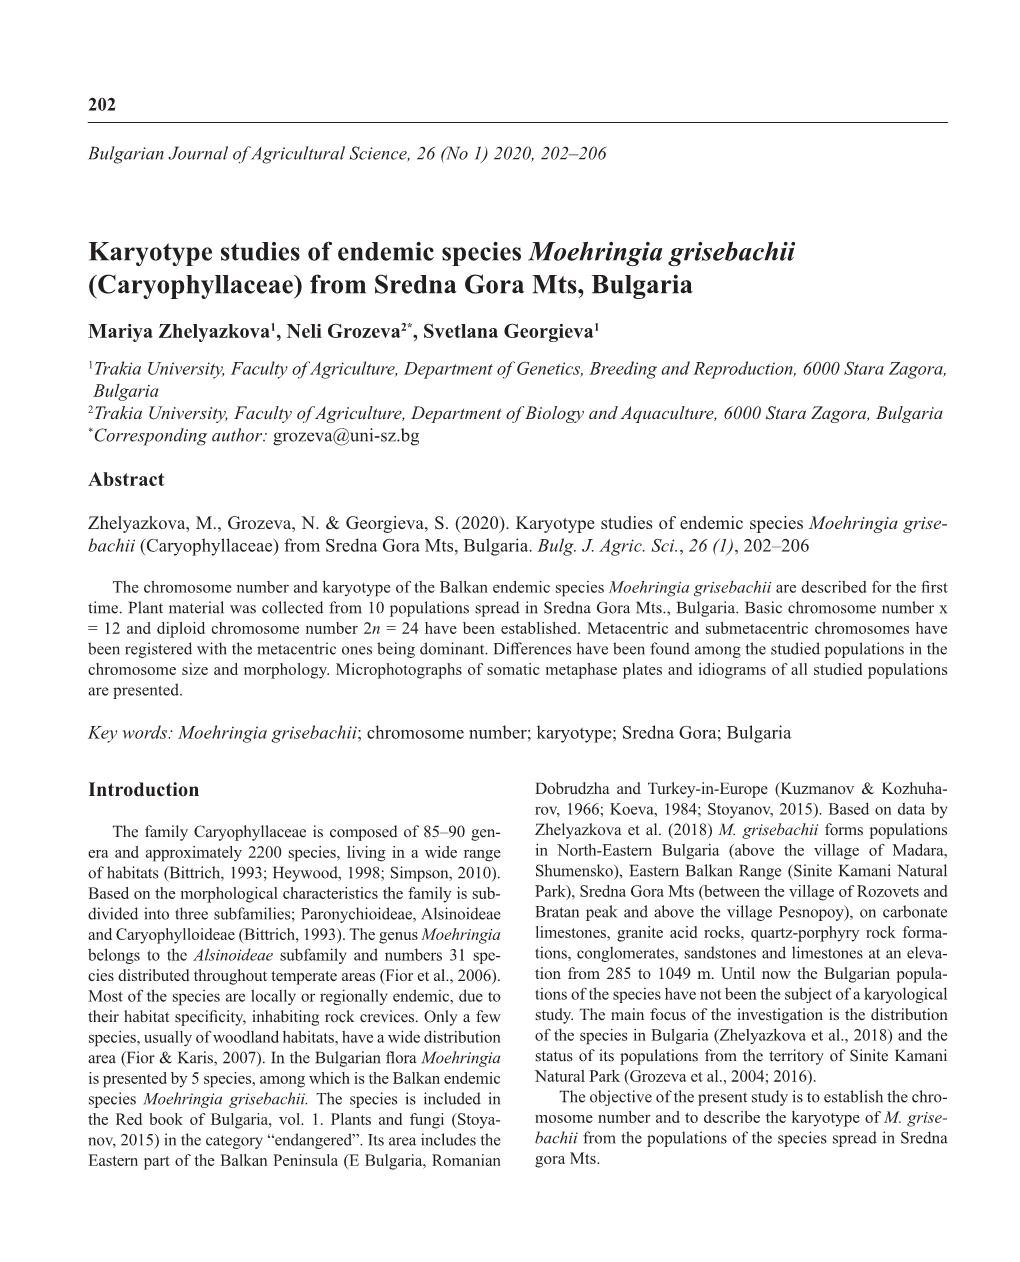 Karyotype Studies of Endemic Species Moehringia Grisebachii (Caryophyllaceae) from Sredna Gora Mts, Bulgaria